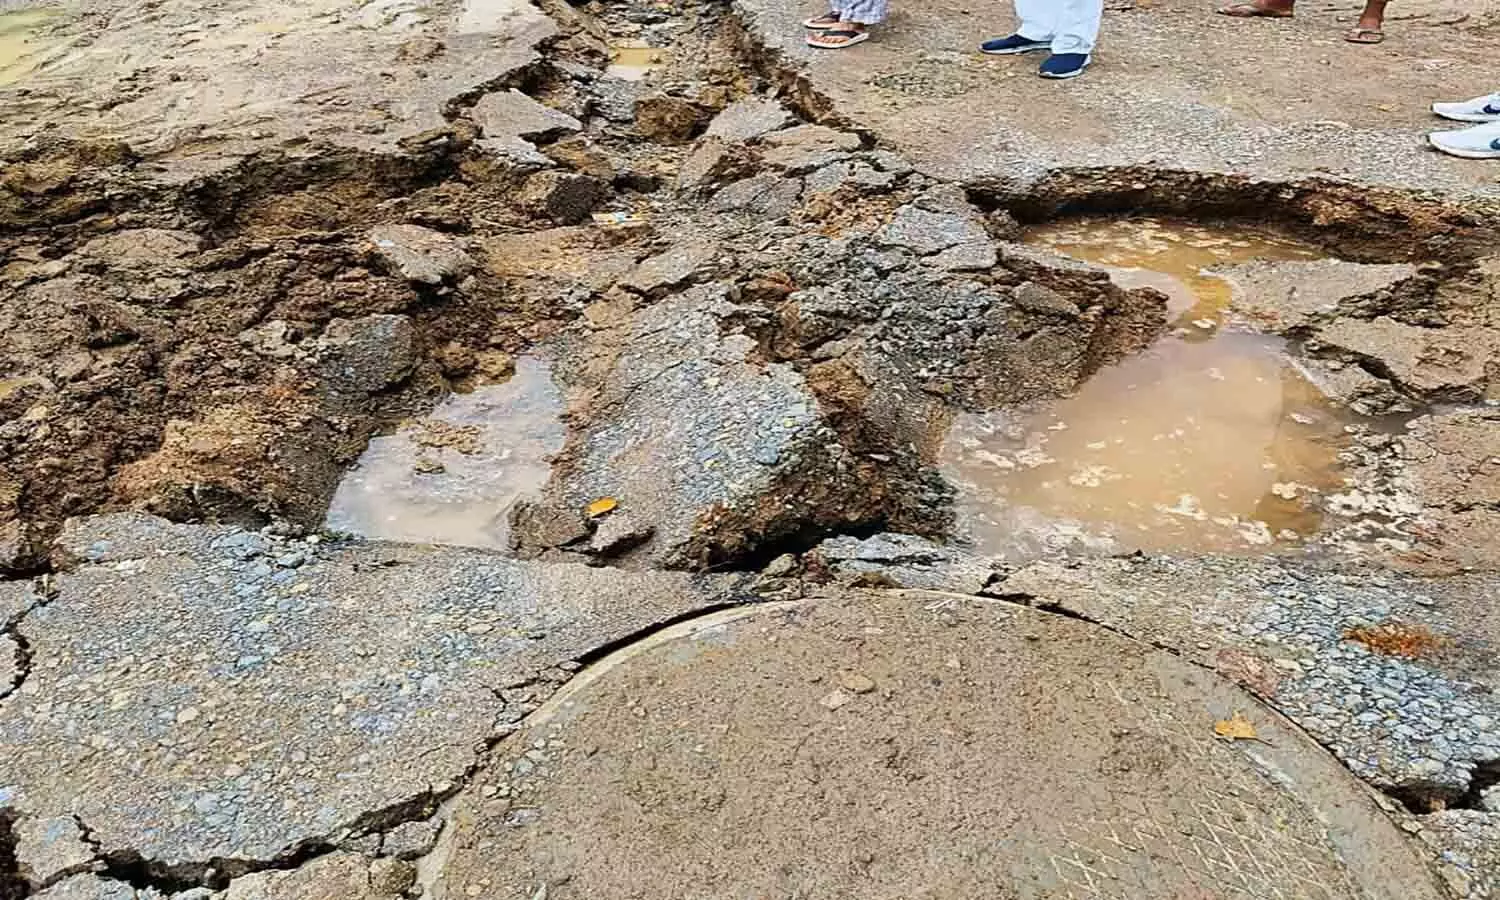 रीवा के अनंतपुर मोहल्ले में नहीं है पानी निकासी की व्यवस्था, बारिश से धंस गई दो सौ मीटर सड़क